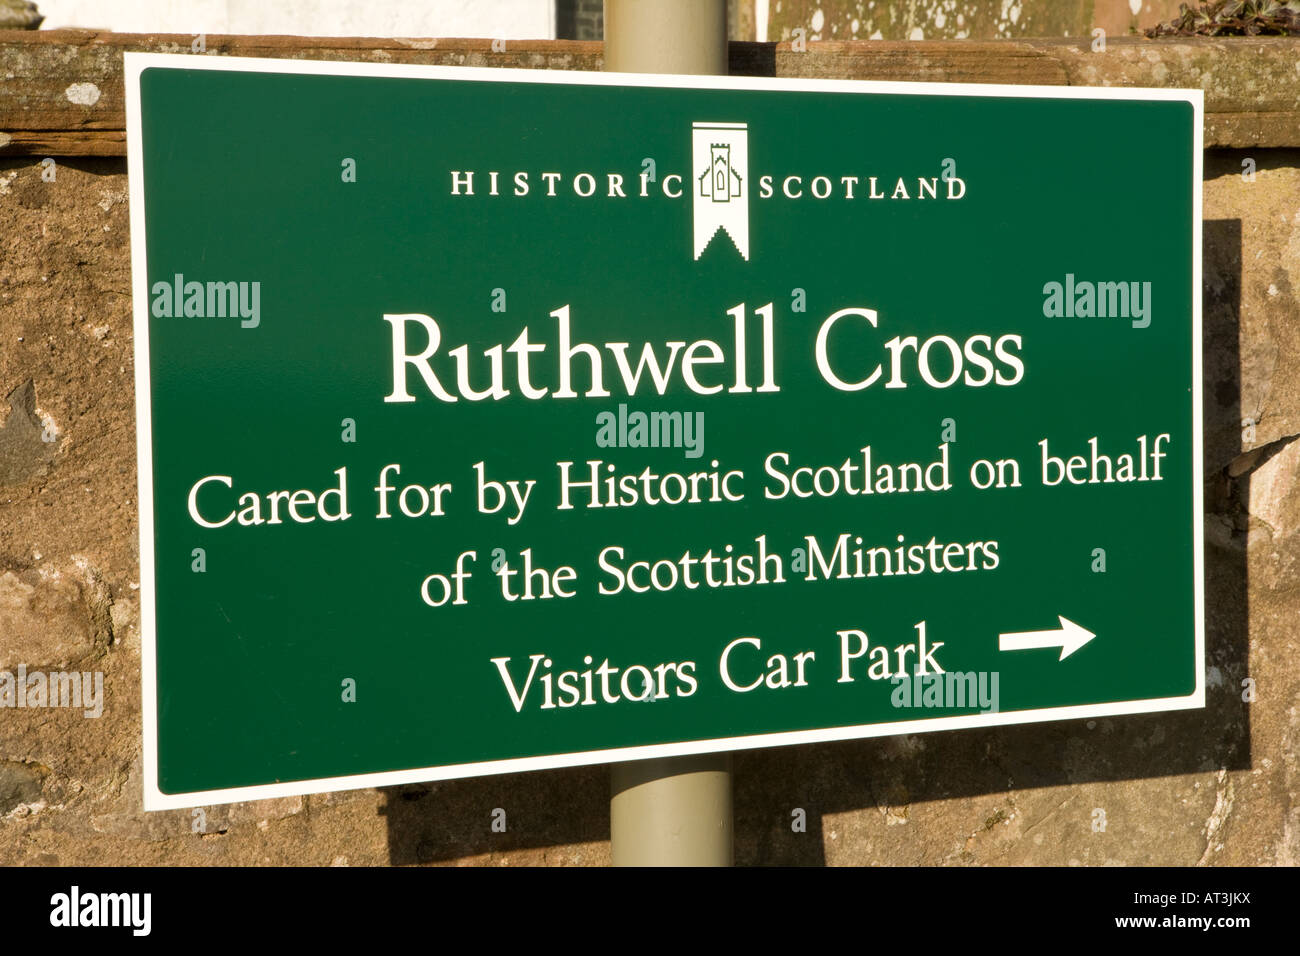 El hogar de la Iglesia de Ruthwell Ruthwell Cross pronto Northumbrian cruz cristiana cerca de Annan Escocia UK Foto de stock